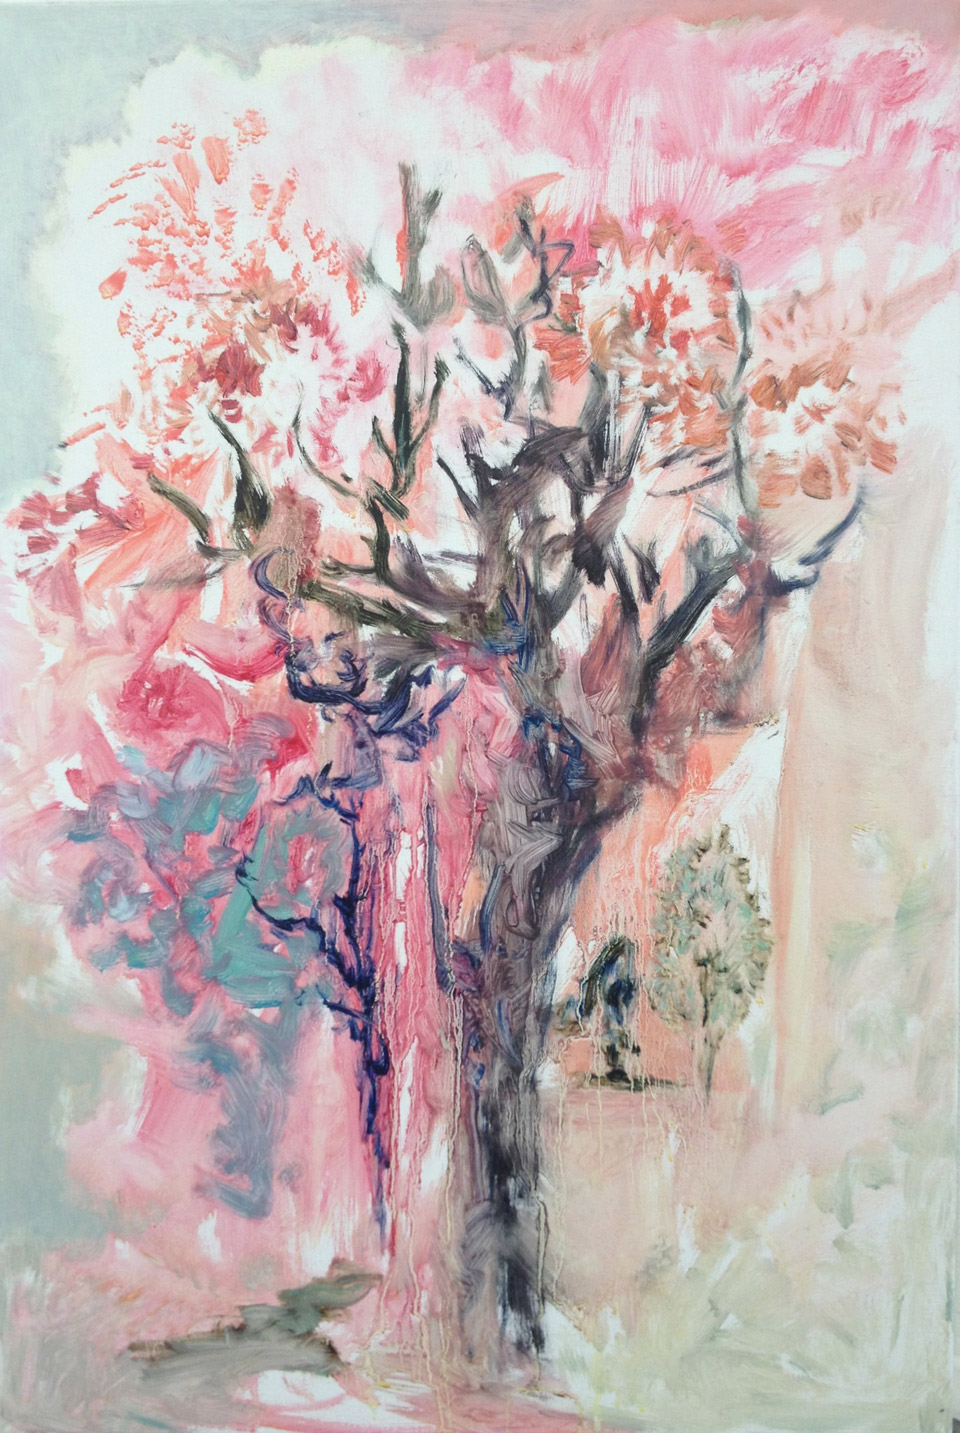 <p> 樹, oil colour on canvas, 72.5 x 53 cm</p>